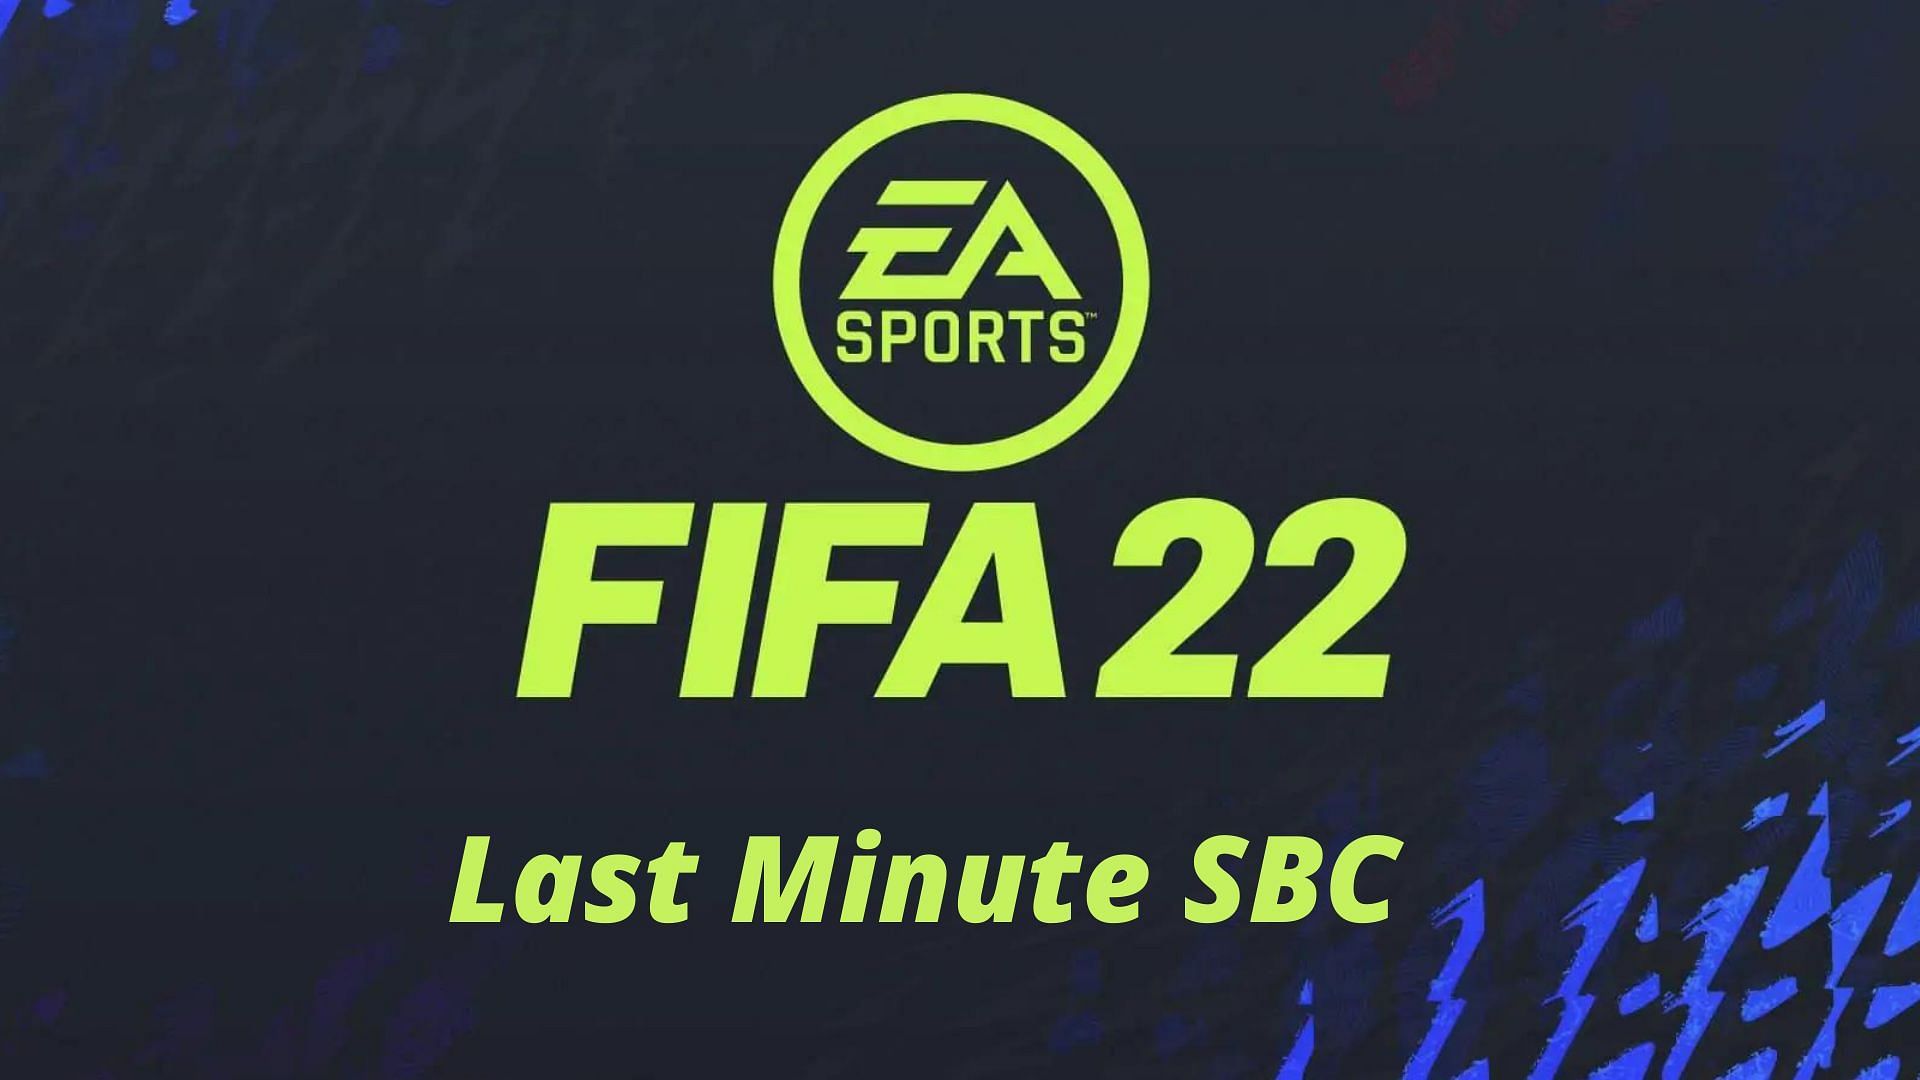 Last Minute SBC is now live (Image via Sportskeeda)